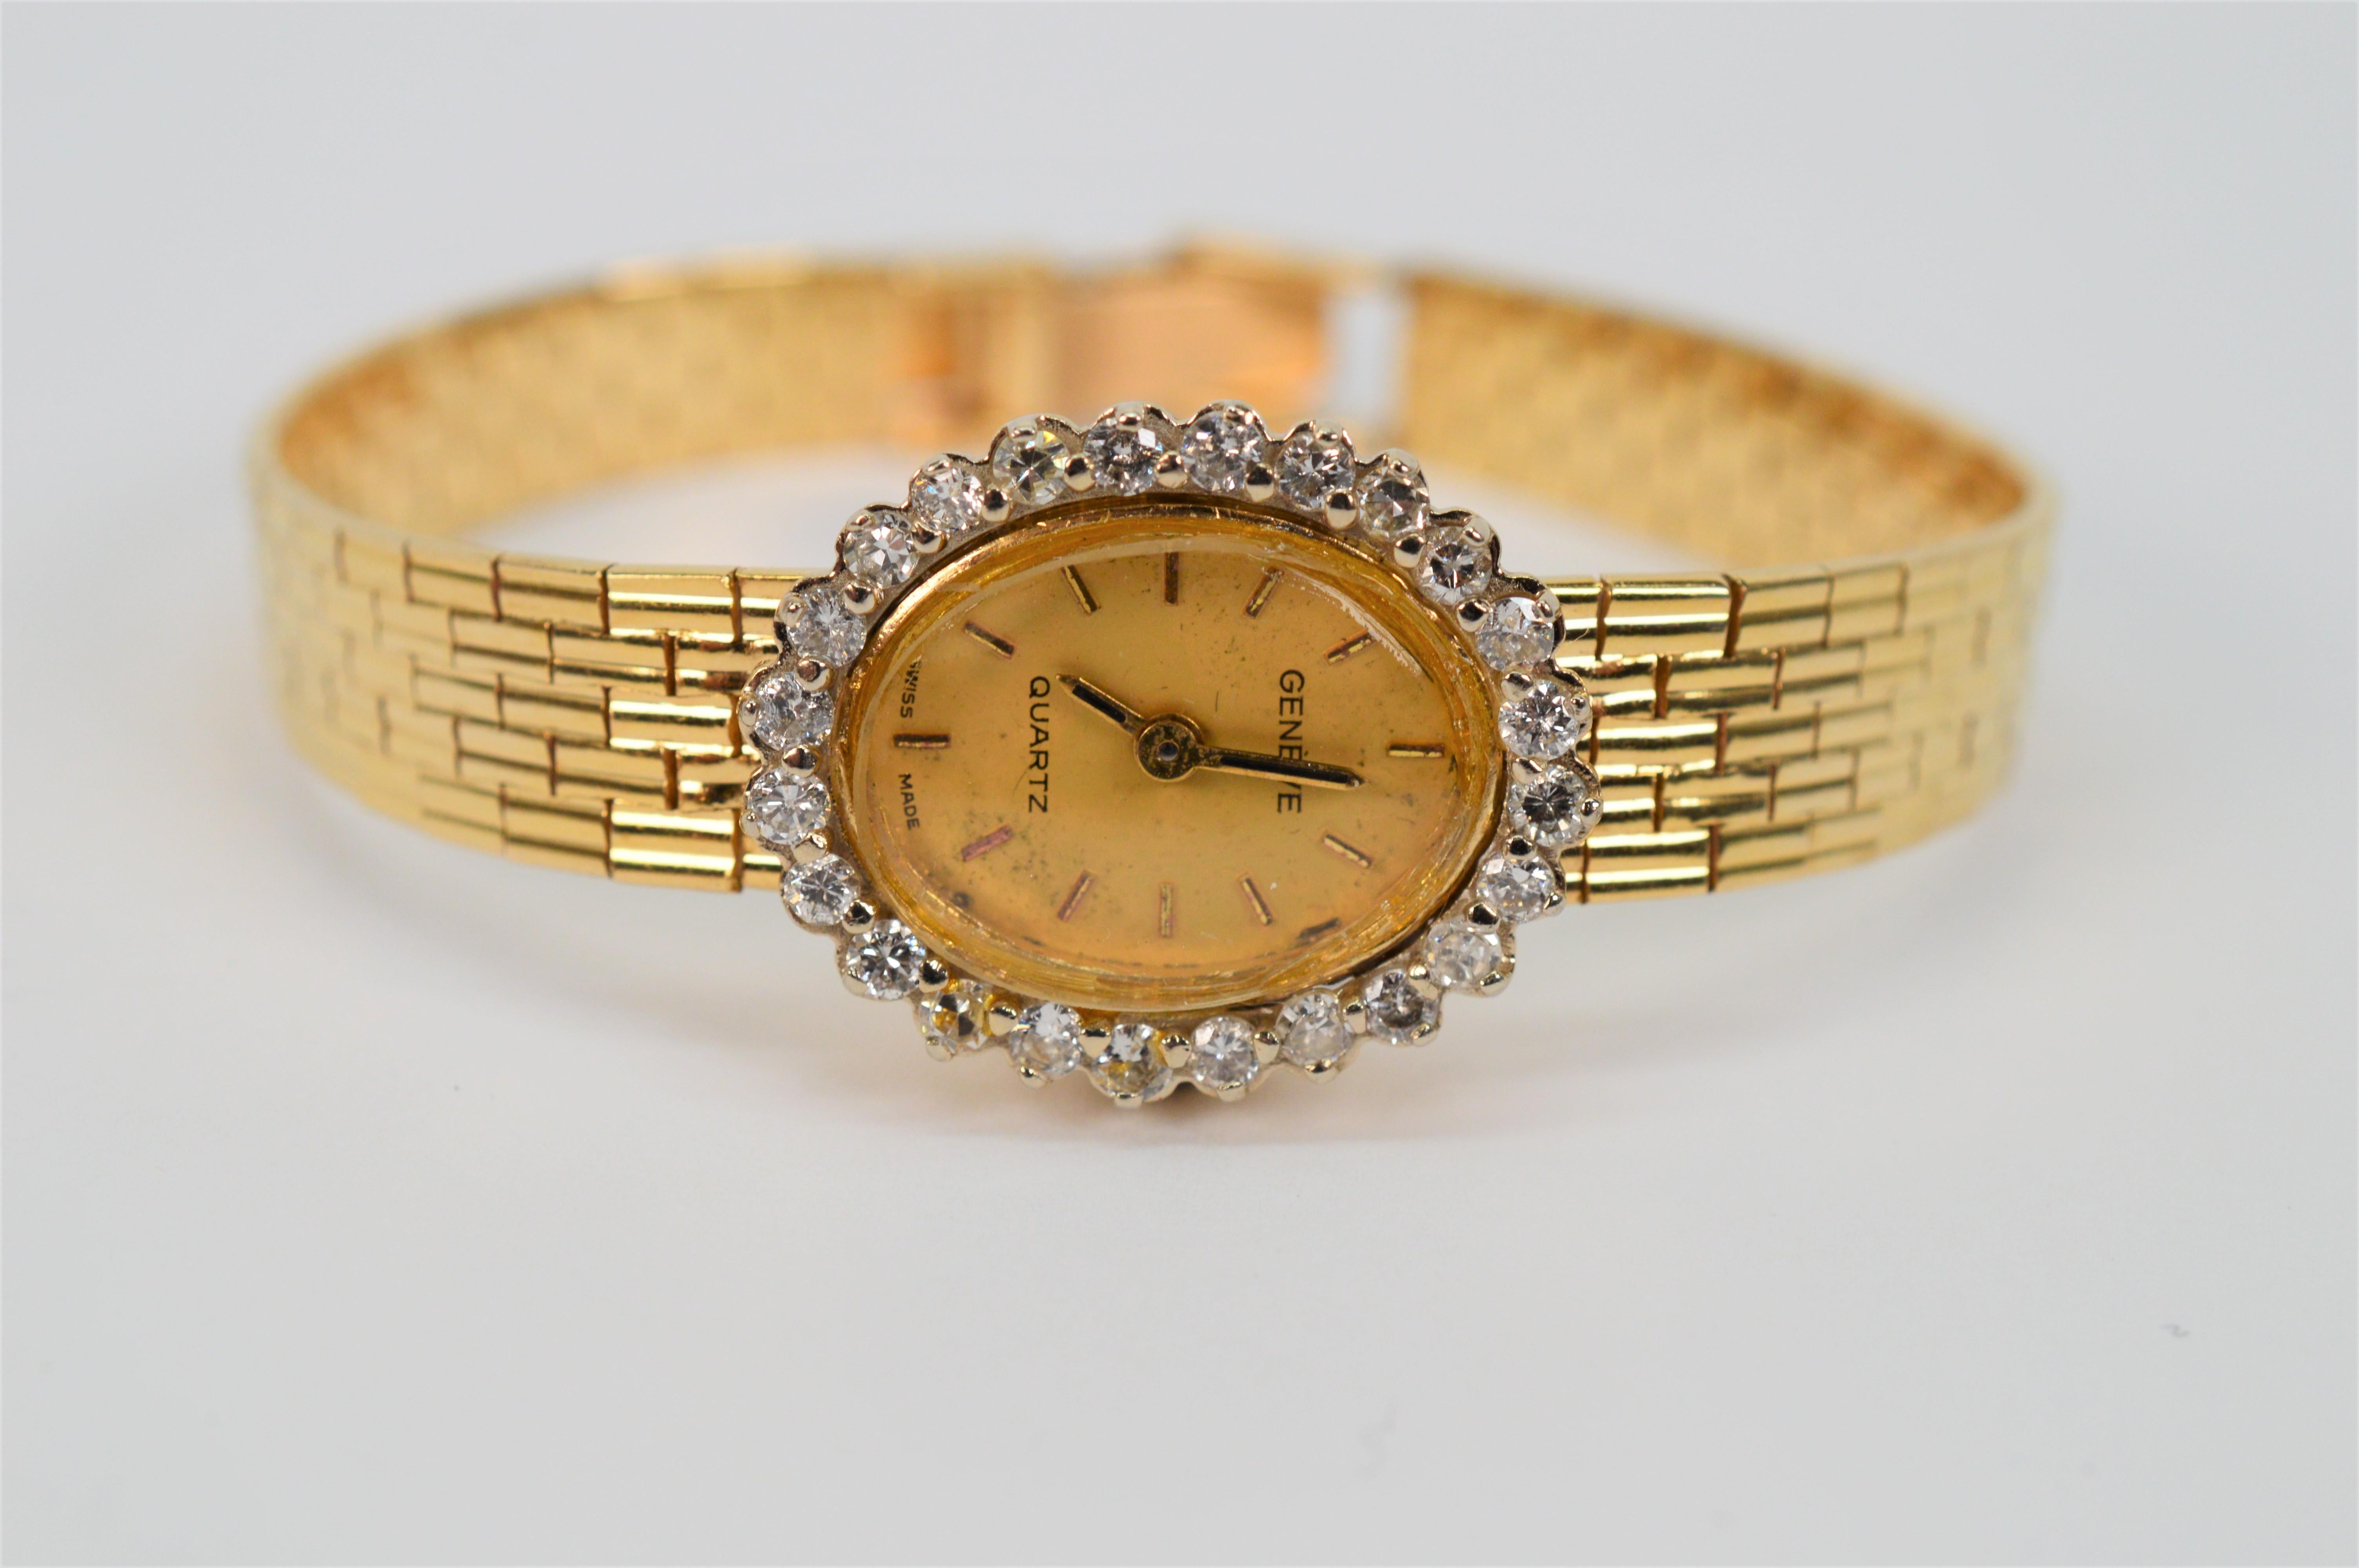 CIRCA 1960 Geneve mit reichen vierzehn Karat 14K Gelbgold Armband der feinen Damen Kleid Uhr hat eine schön Diamant umrahmt ovales Gesicht mit .72 Karat H/I2 Diamanten.  Die Uhr hat ein Quarzwerk und eine neue Batterie (Nummer 364). Das elegante,